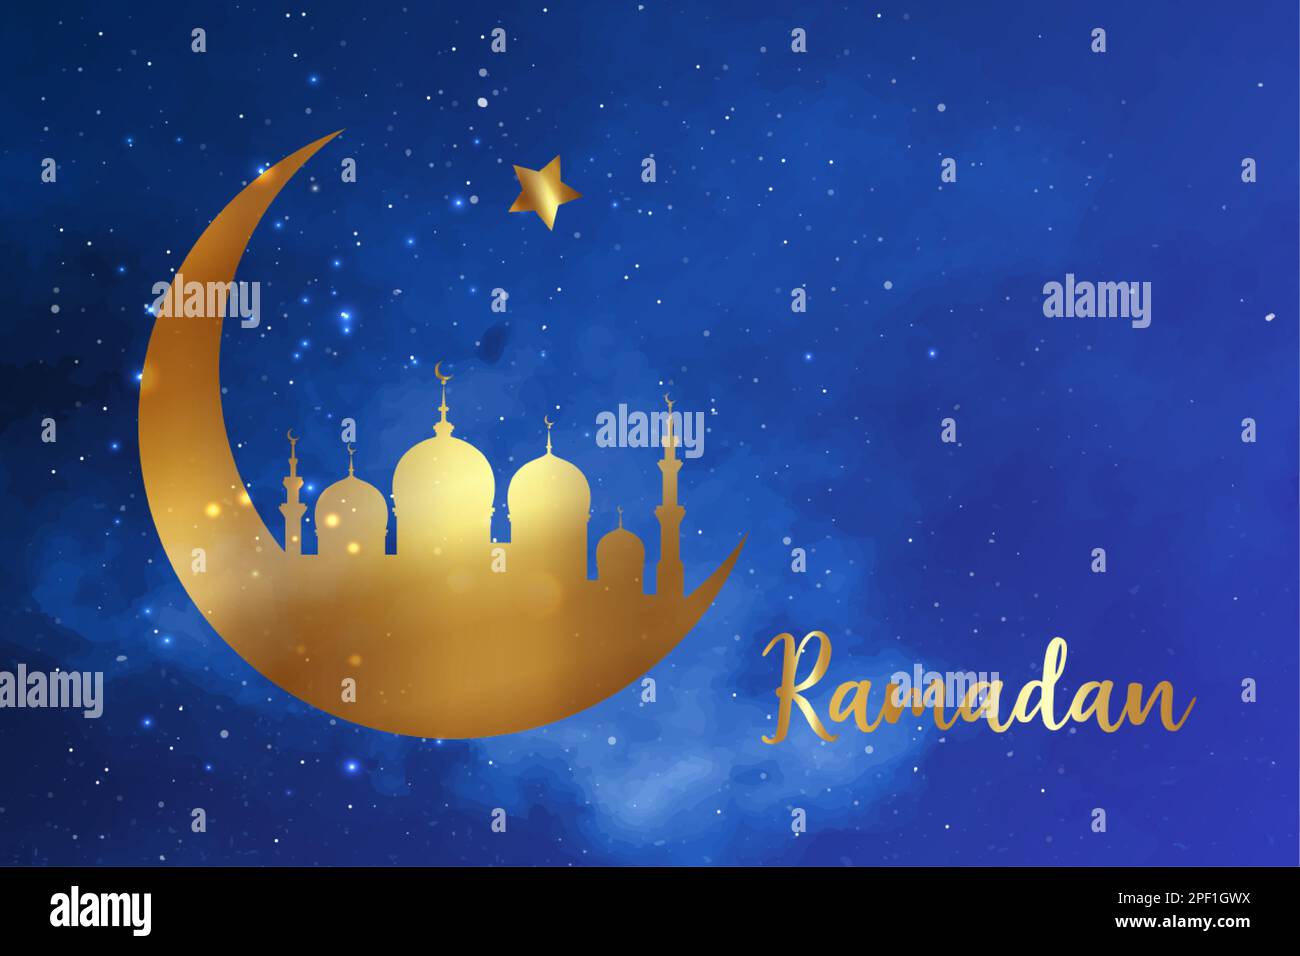 Ramadan-Konzept in Halbmondform mit arabisch-islamischer Moschee zur Feier des Heiligen Monats der muslimischen Gemeinschaft, goldene Vektorsilhouette Stock Vektor